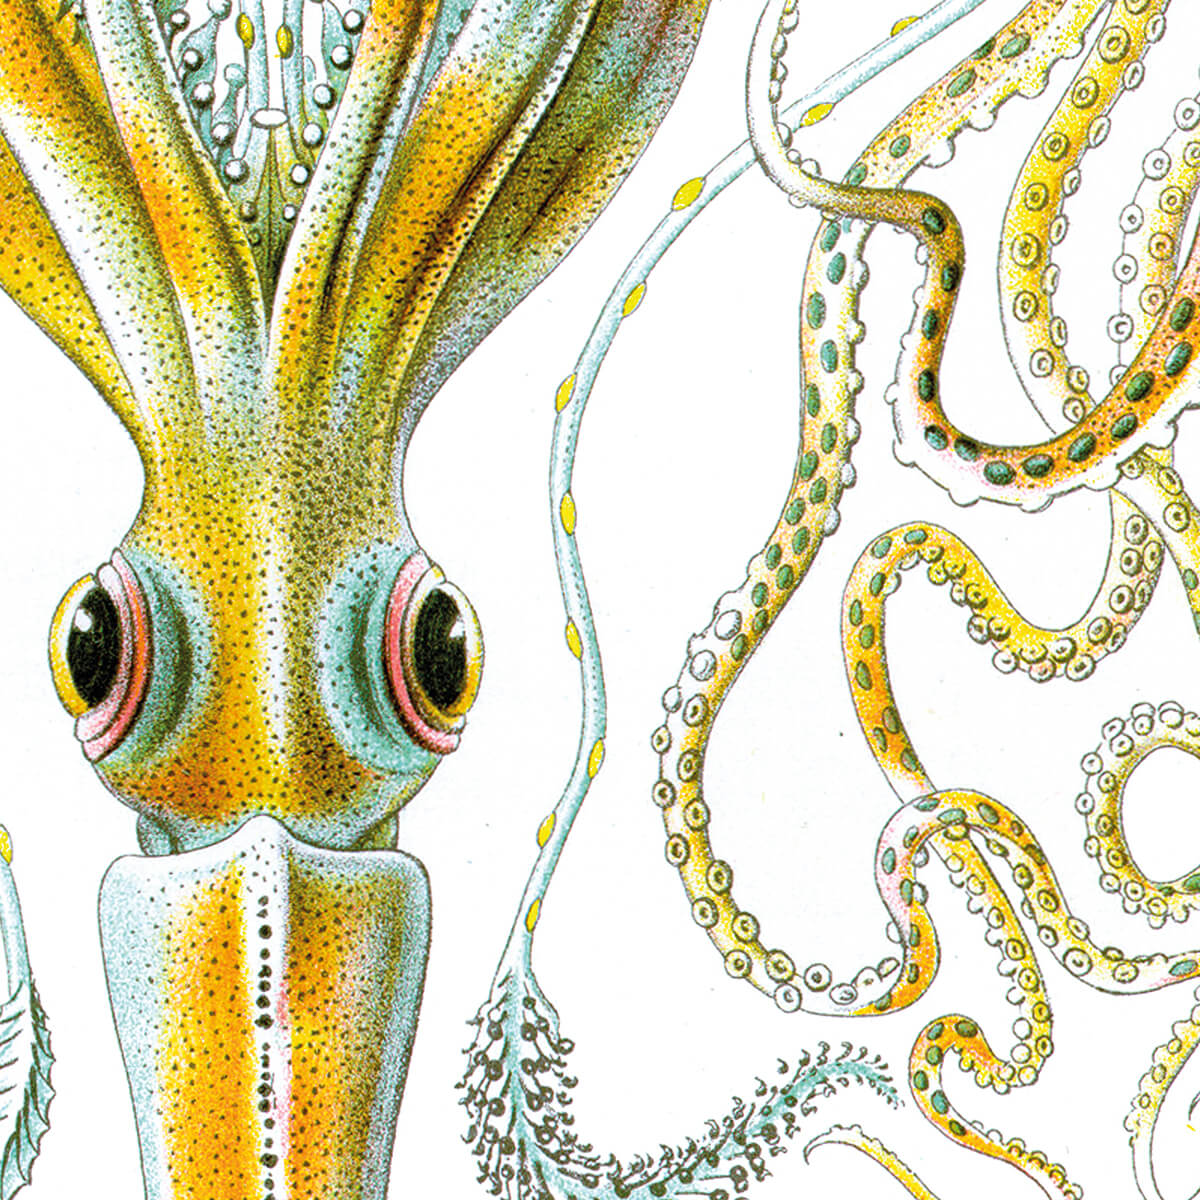 Gamochonia - Octopus